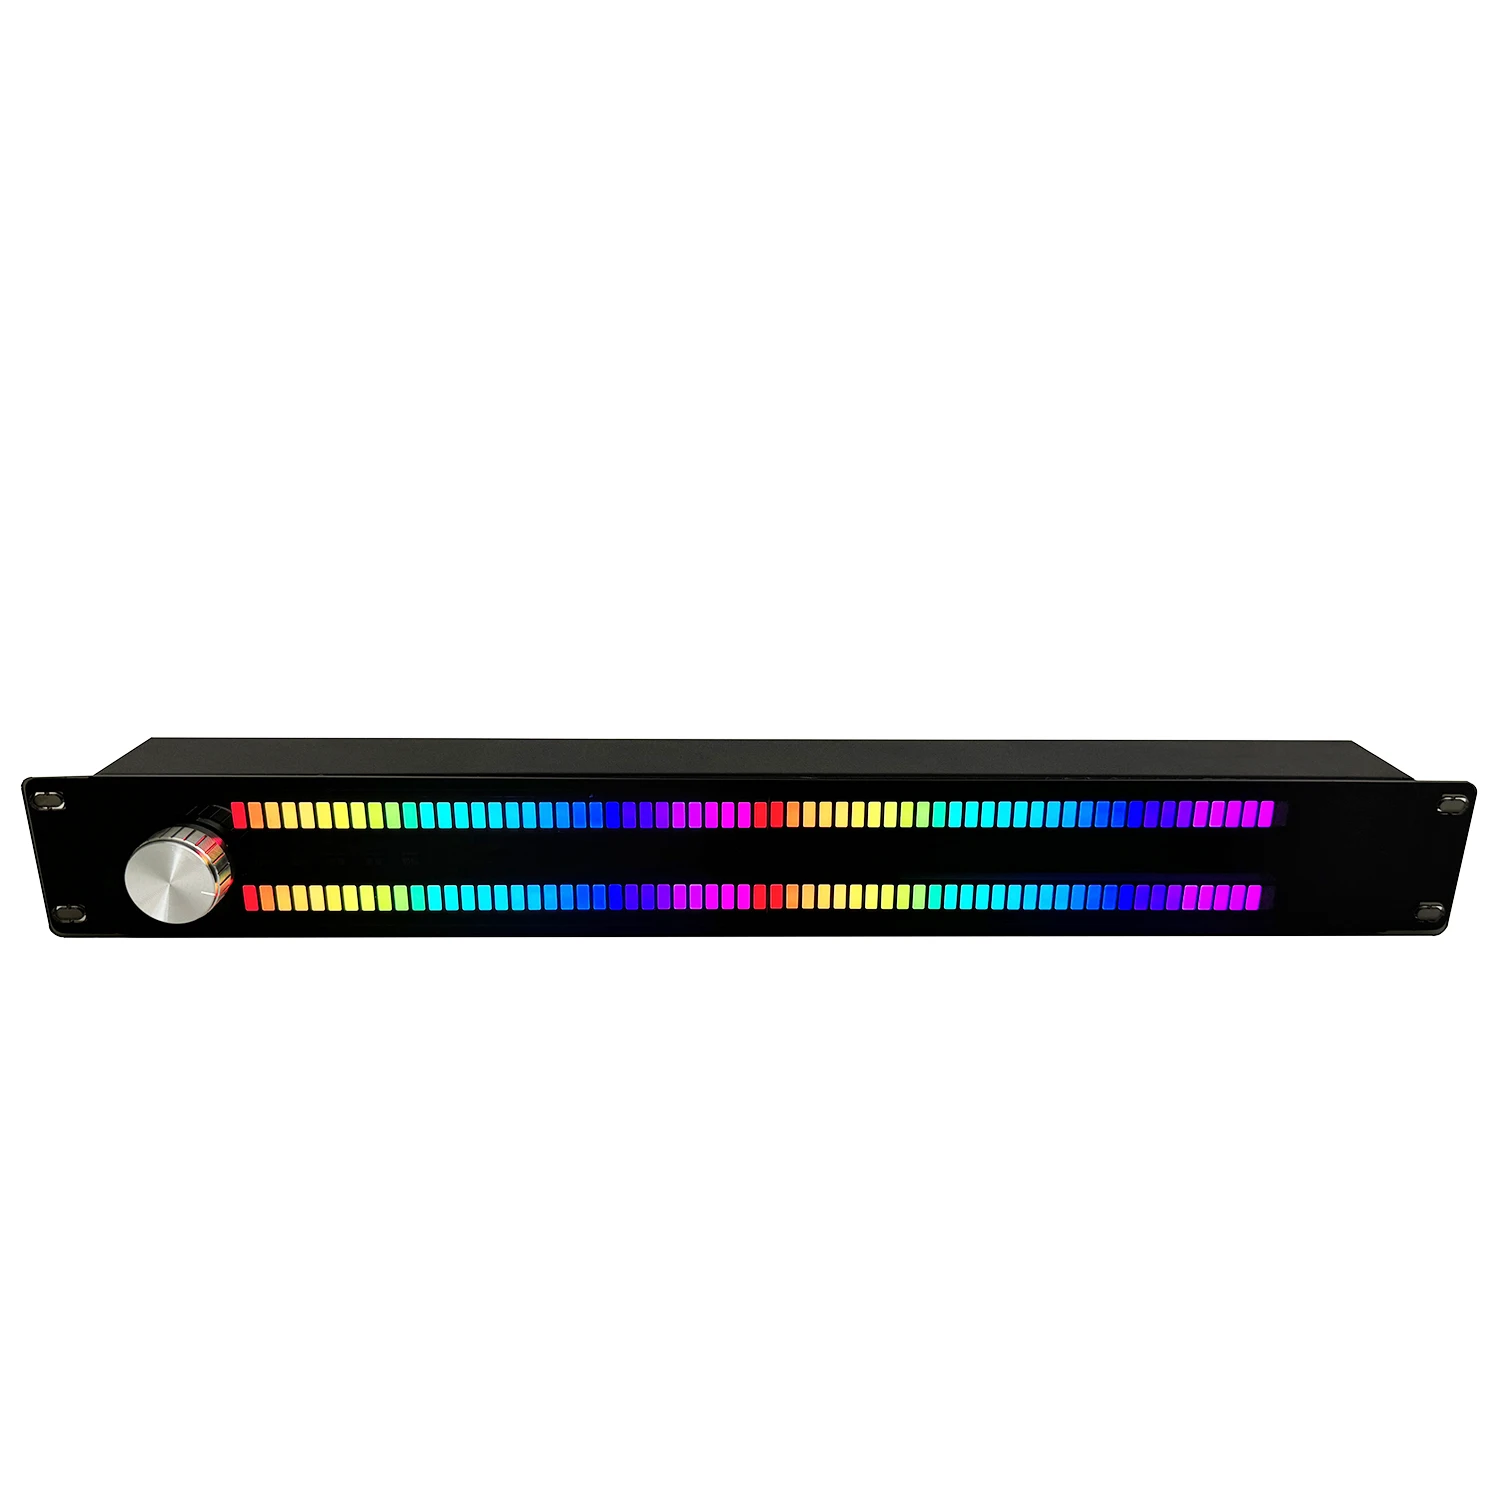 Индикатор уровня музыки 128 полноцветных светодиодов дисплей музыкального спектра индикатор музыкальной атмосферы световой индикатор музыки голосовое управление Изображение 1